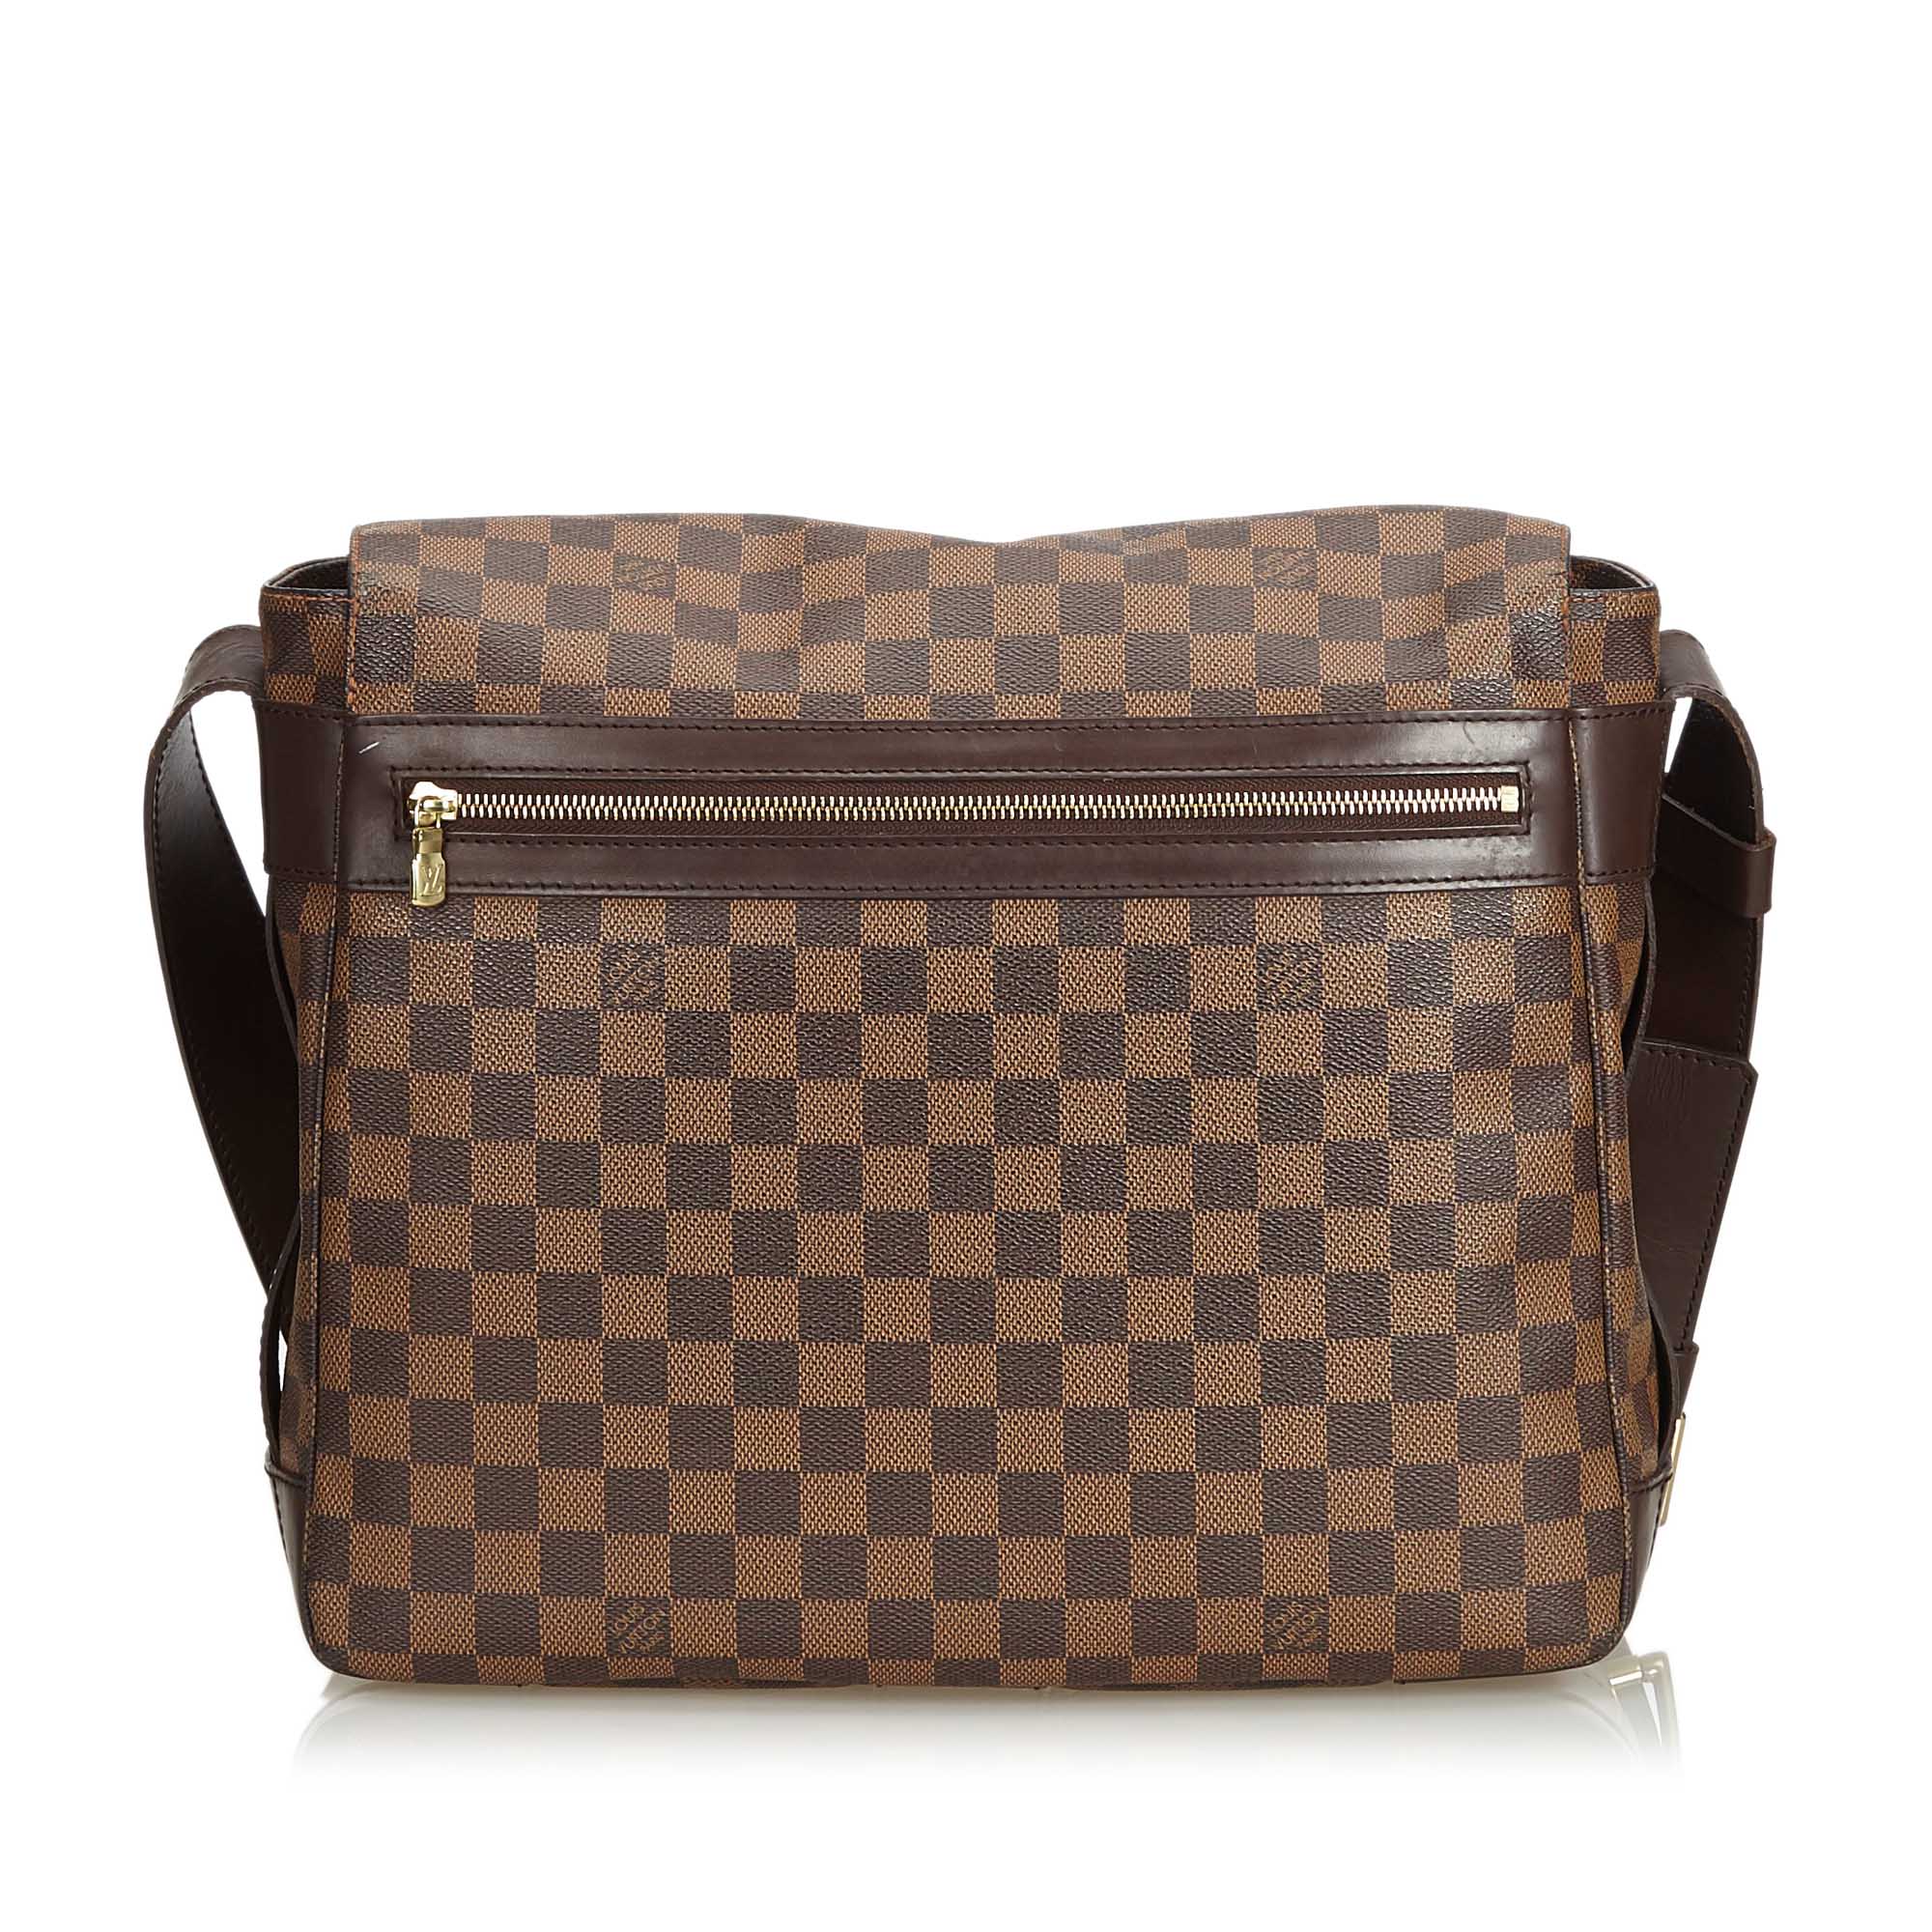 Bastille cloth bag Louis Vuitton Brown in Cloth - 31327553